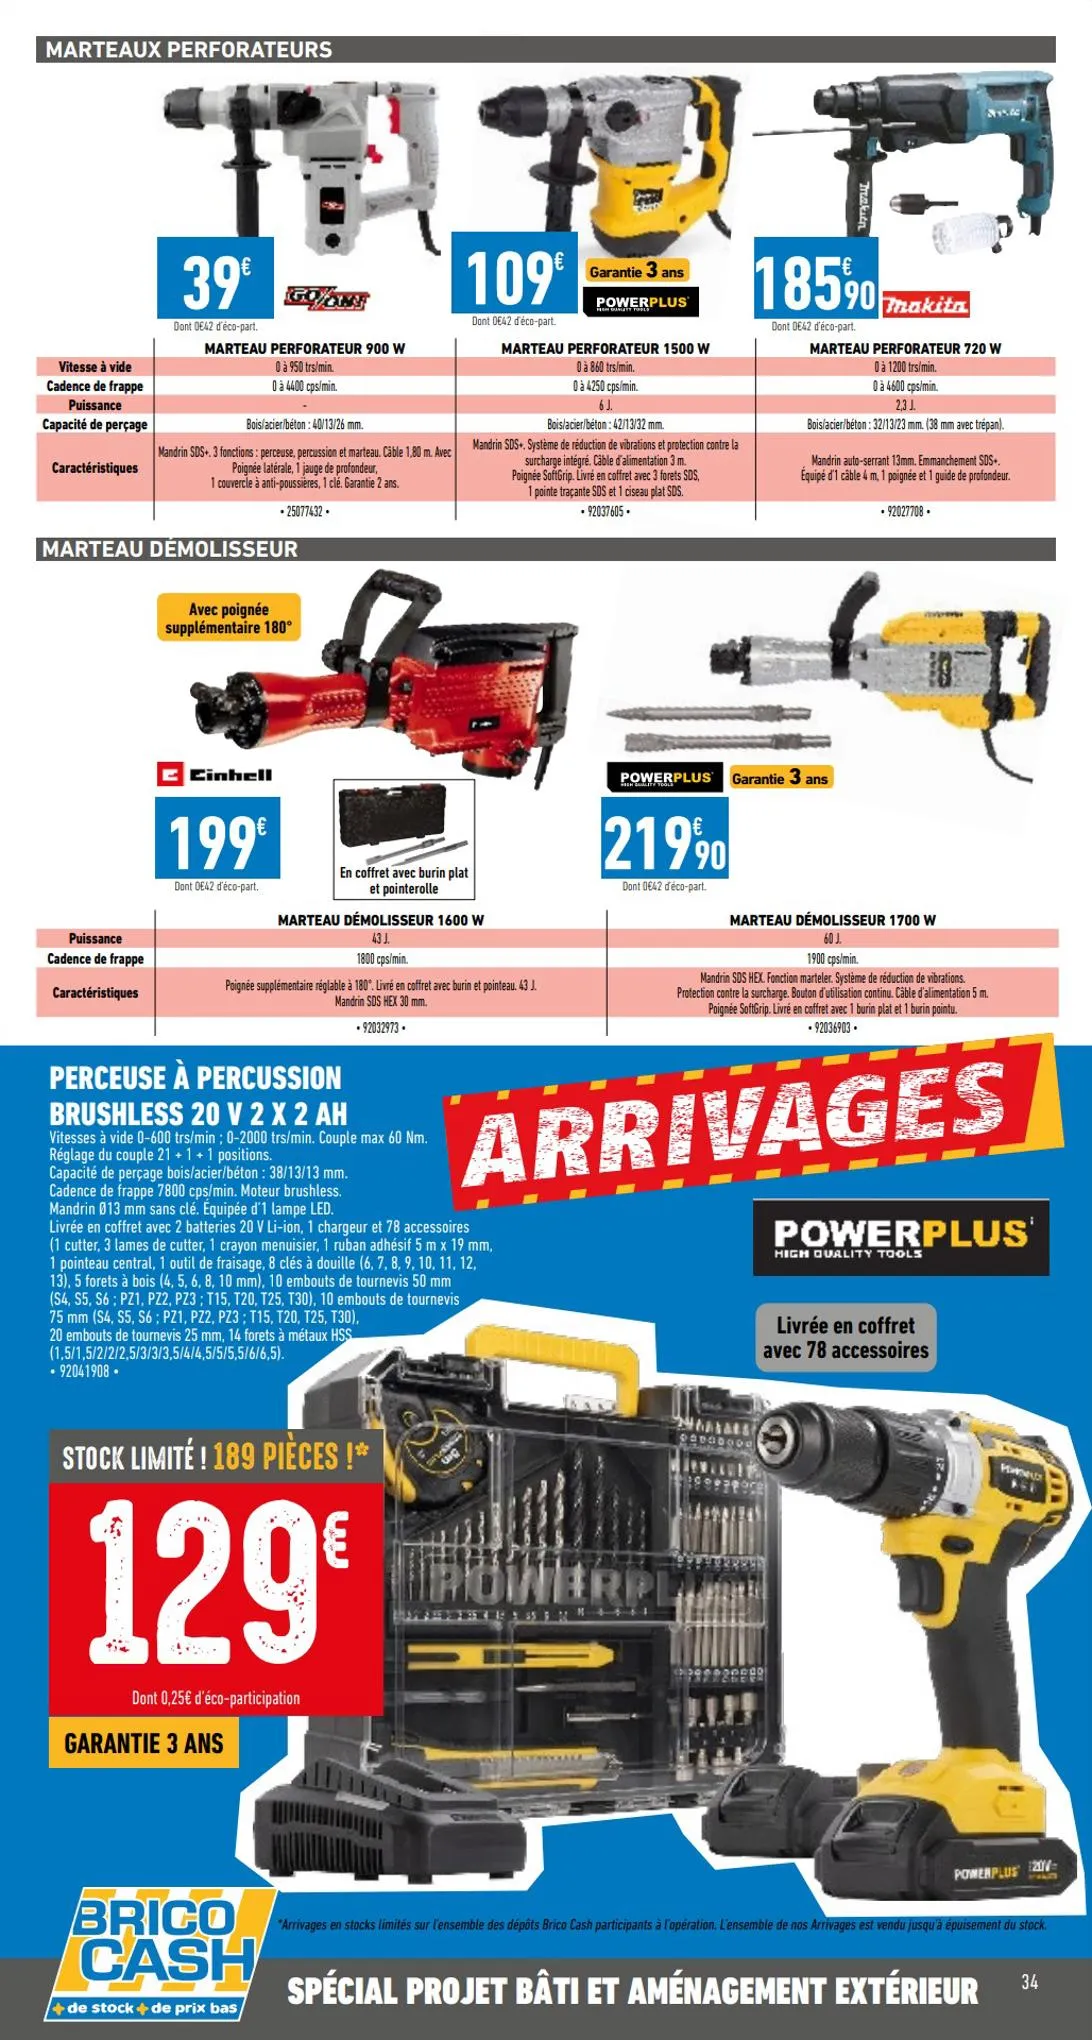 Catalogue Catalogue bâti & aménagement extérieur, page 00034